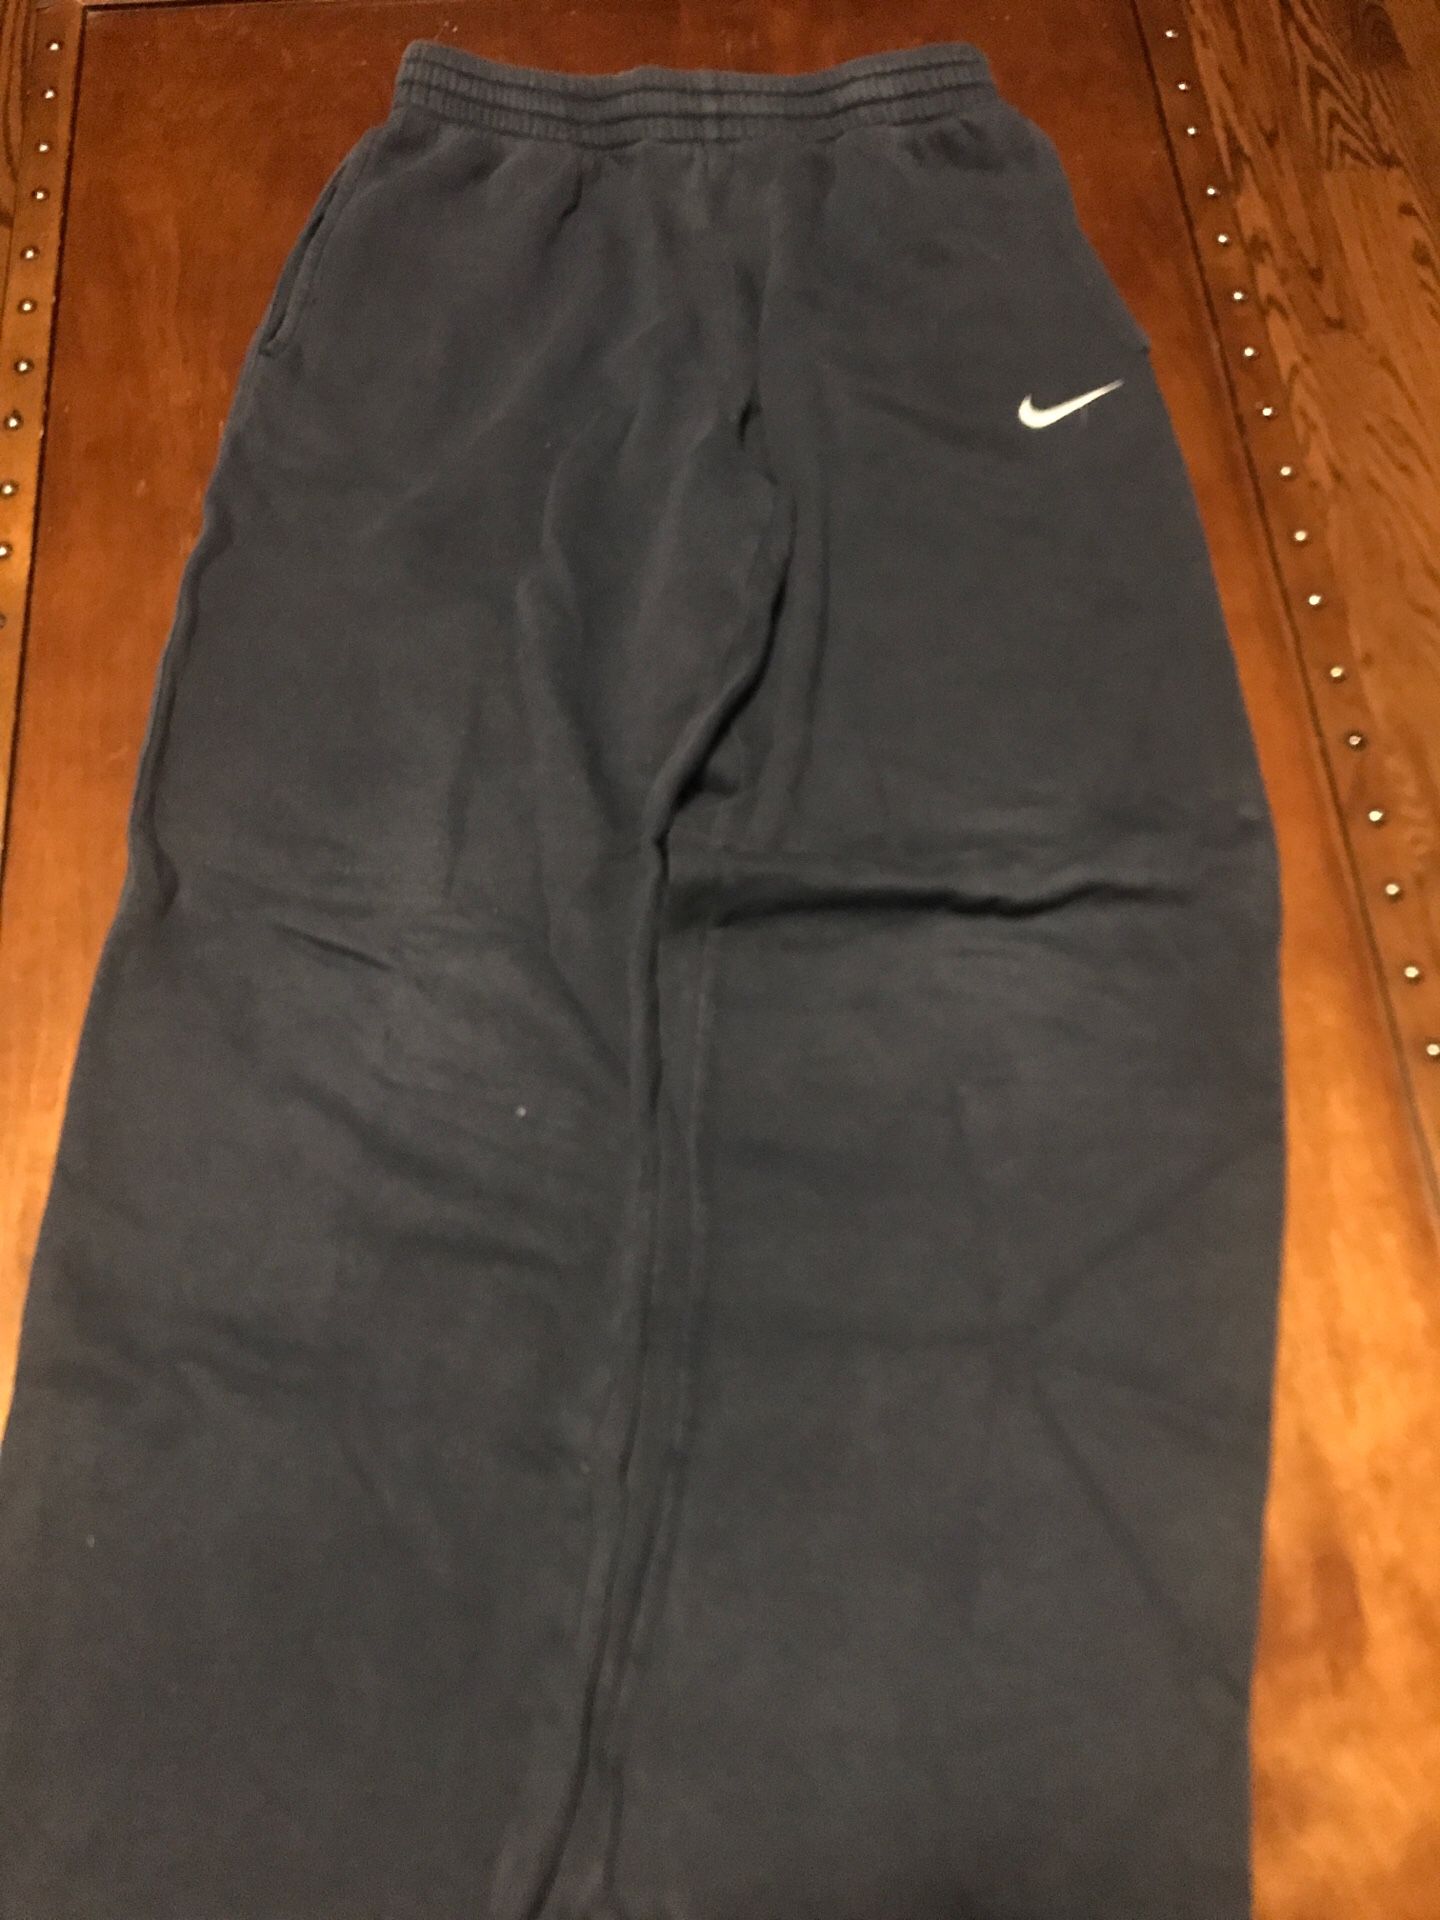 Boy’s size L Navy Nike sweatpants